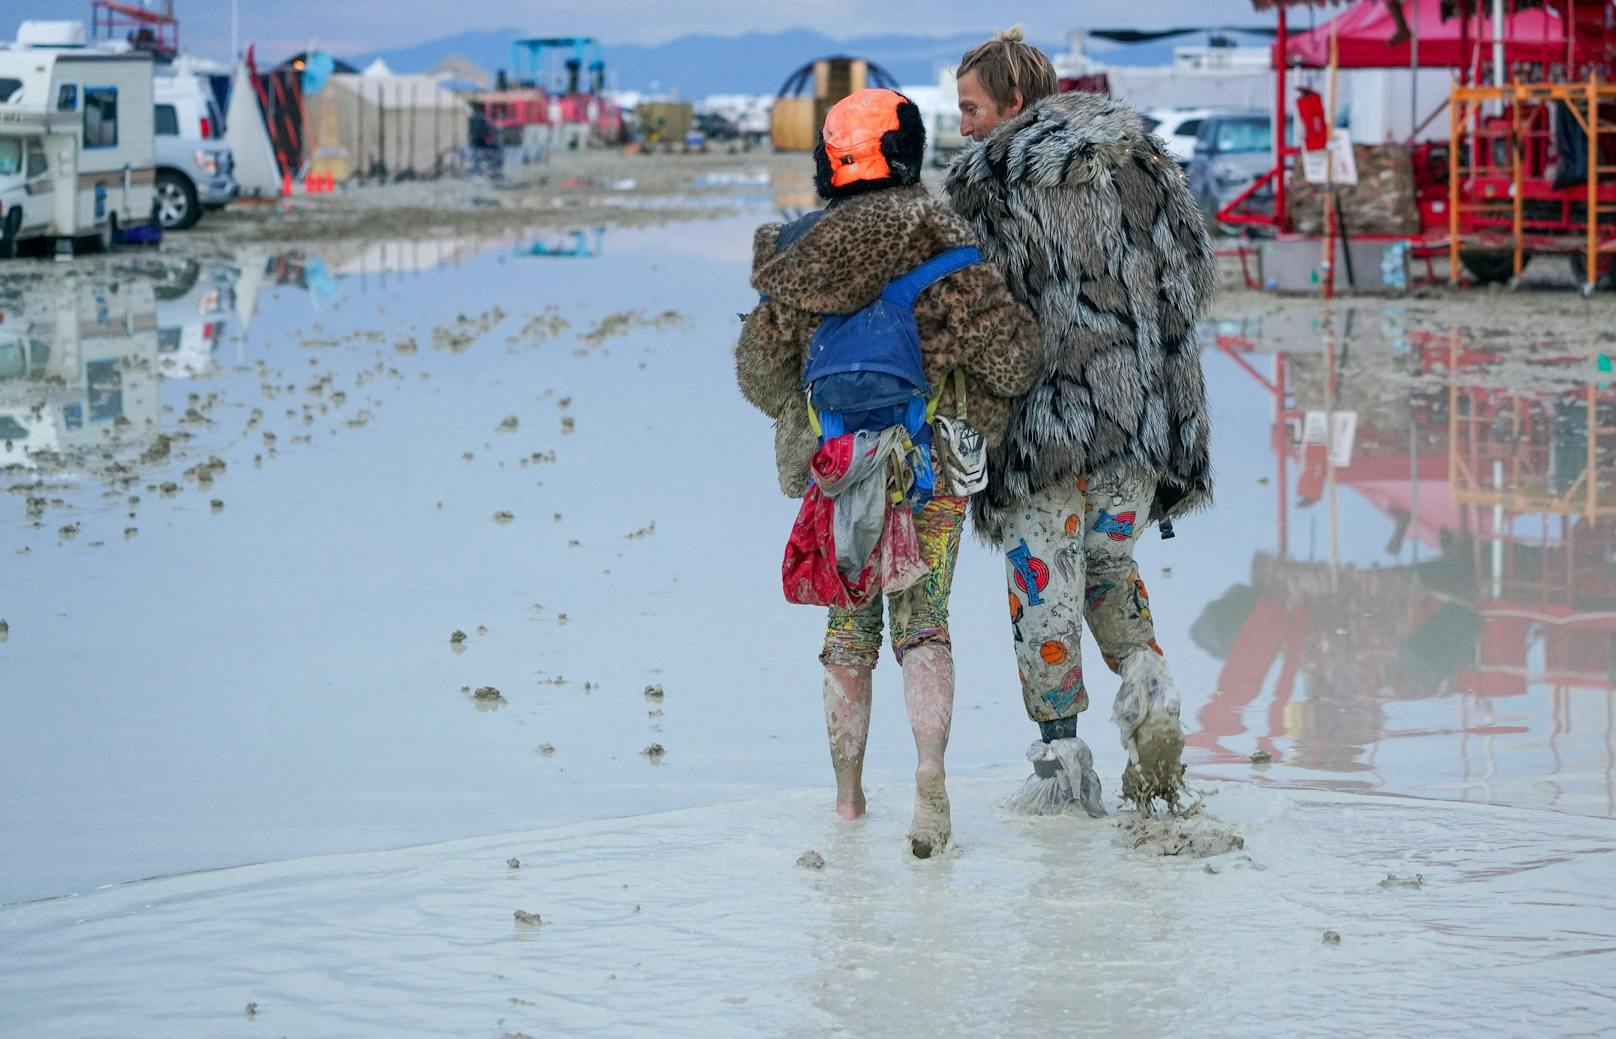 Schlamm und unhygienische Bedingungen – die Tore zum Festivalgelände des "Burning Man" sind verschlossen.